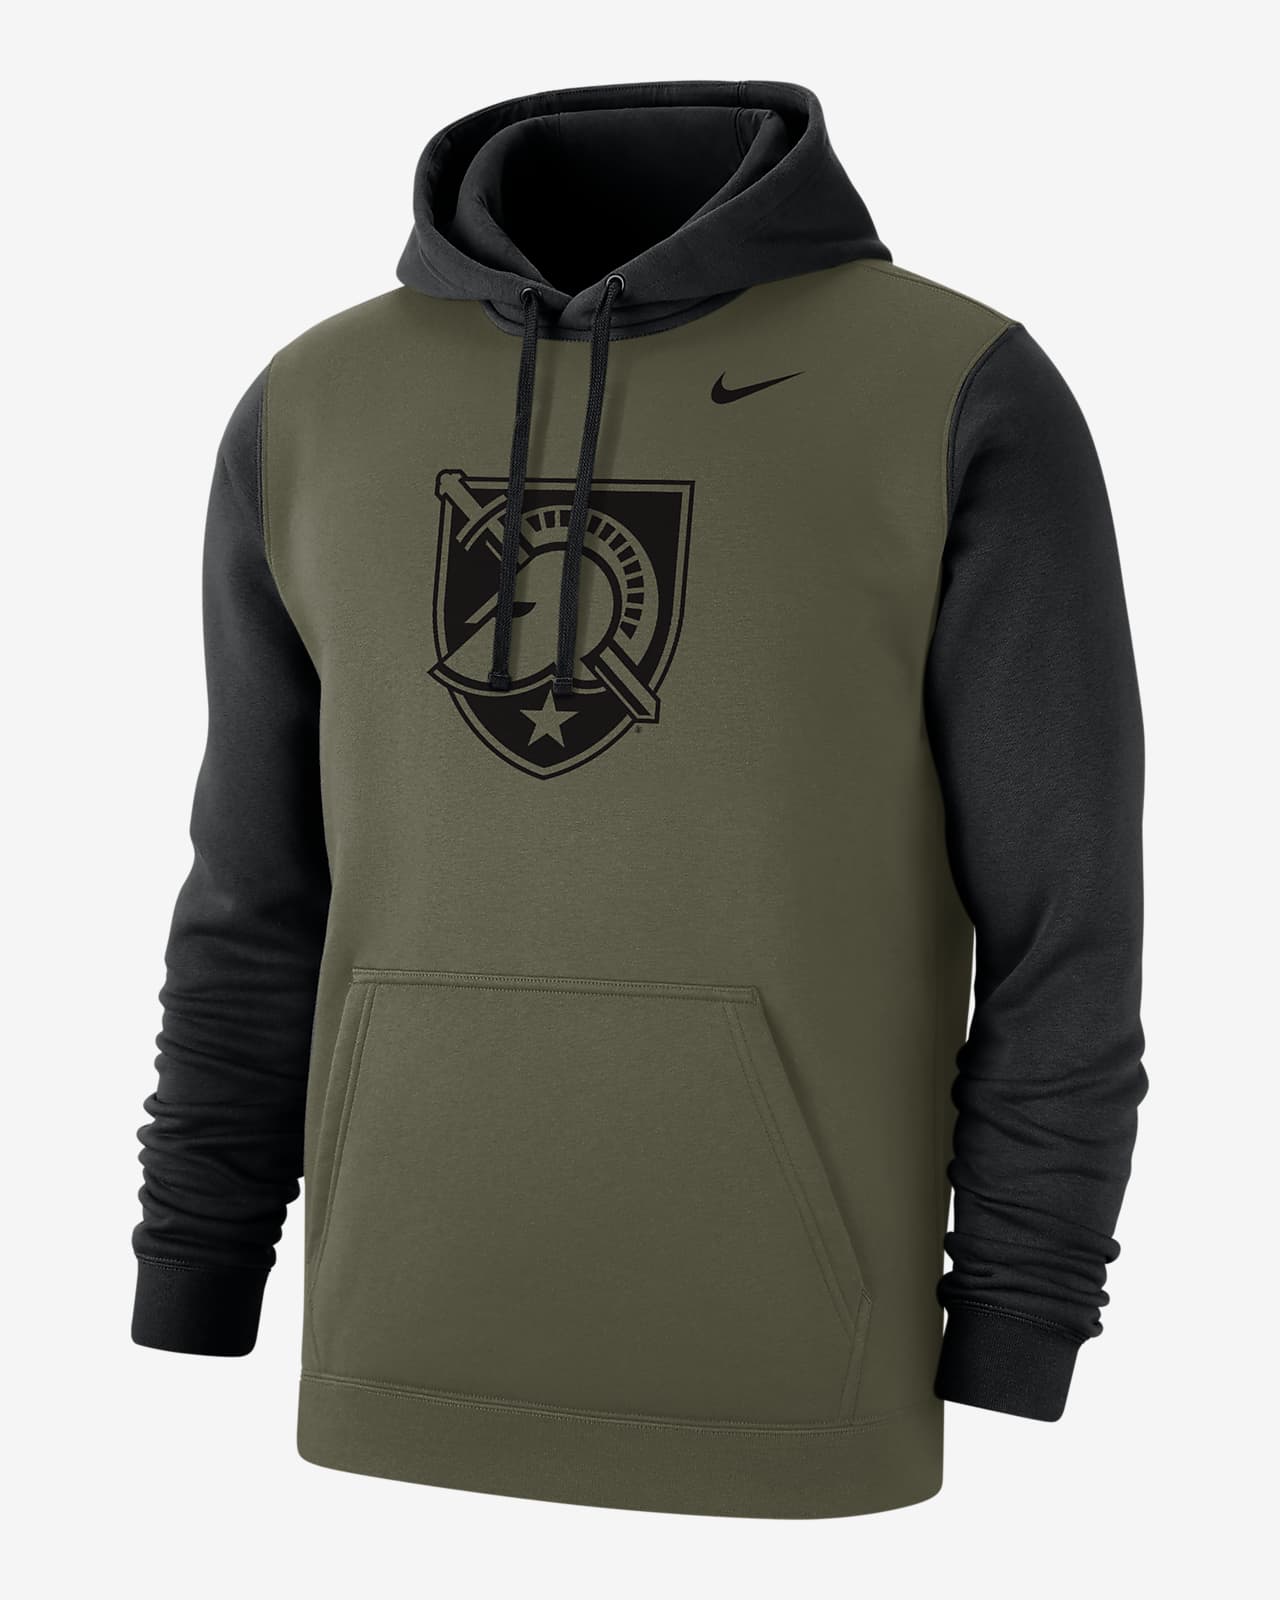 Army Olive Pack Men's Nike College Hoodie